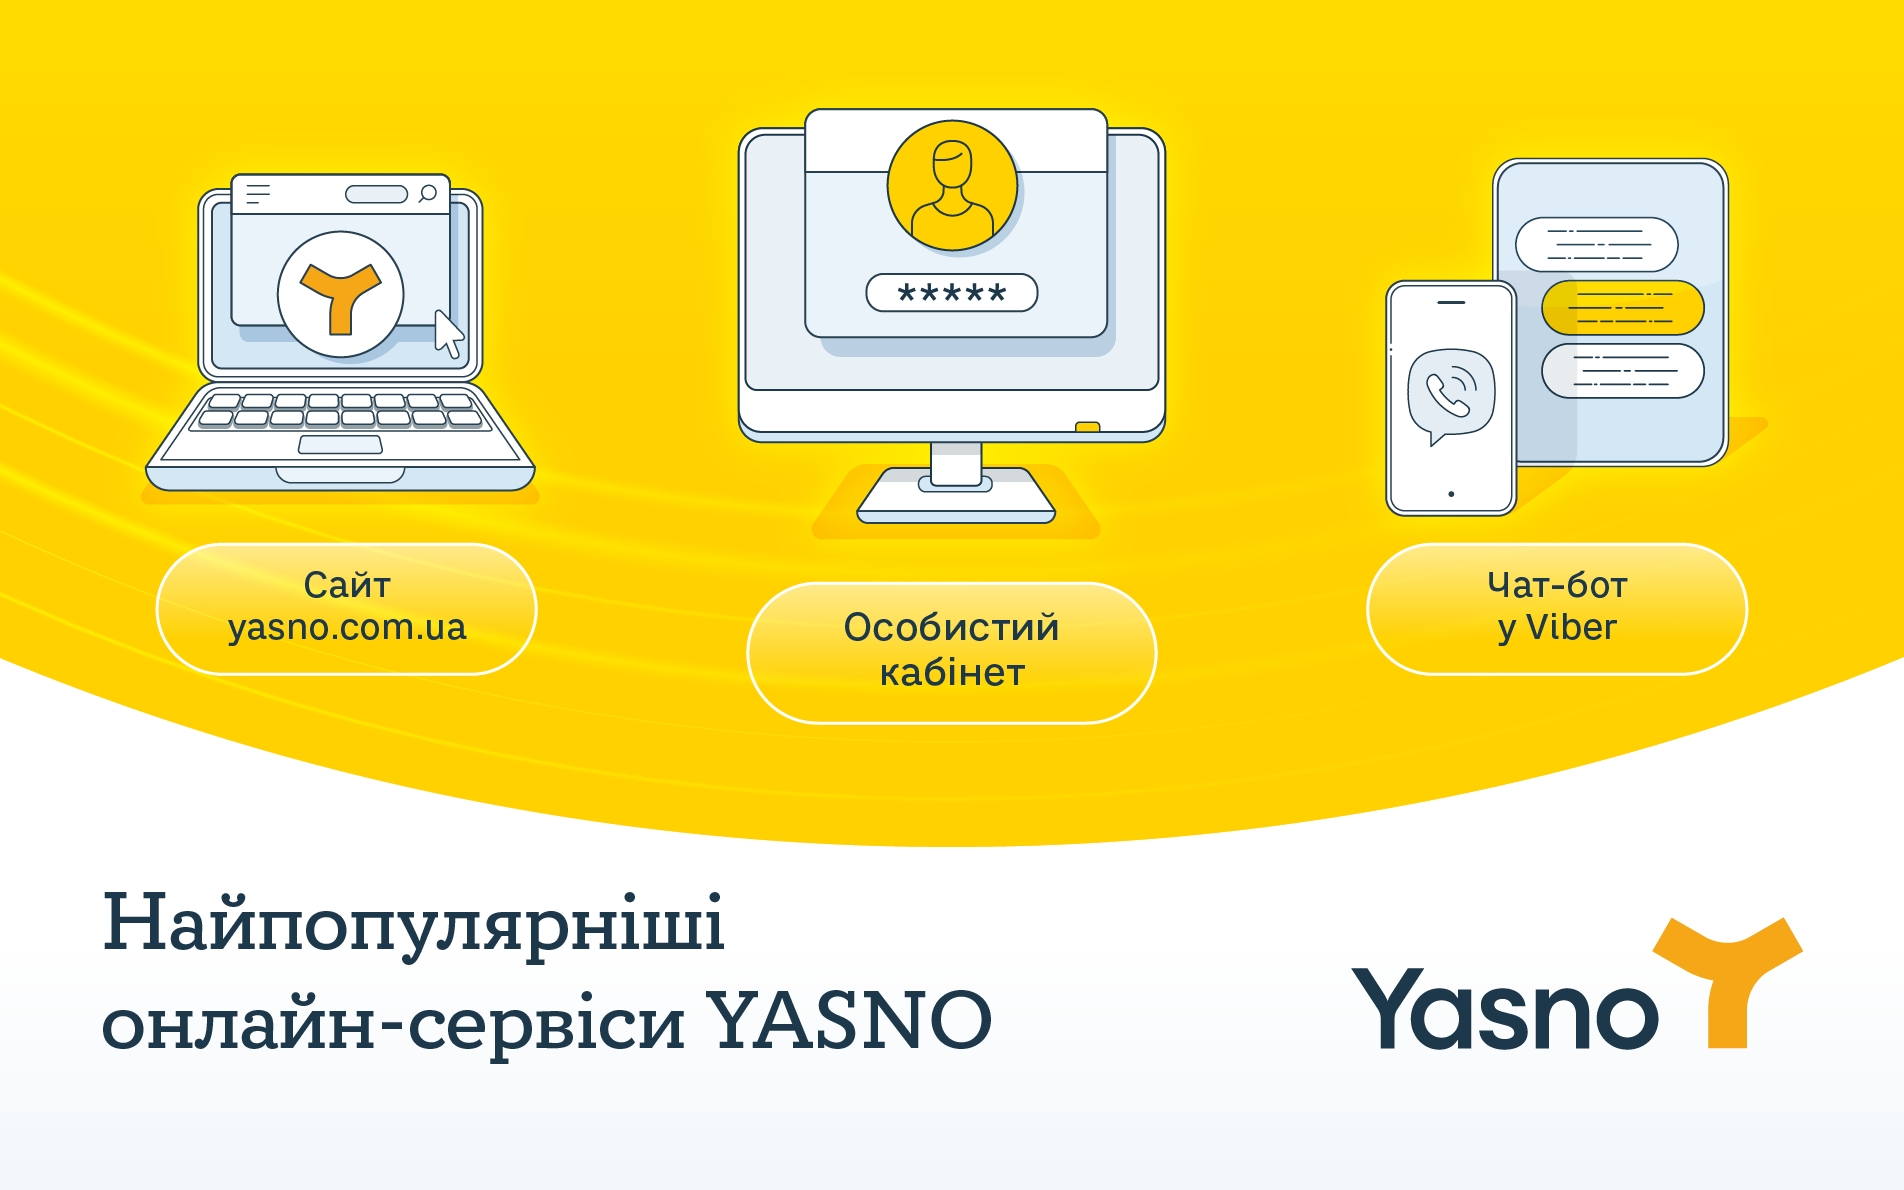 Вже понад 70% клієнтів YASNO користуються онлайн-сервісами